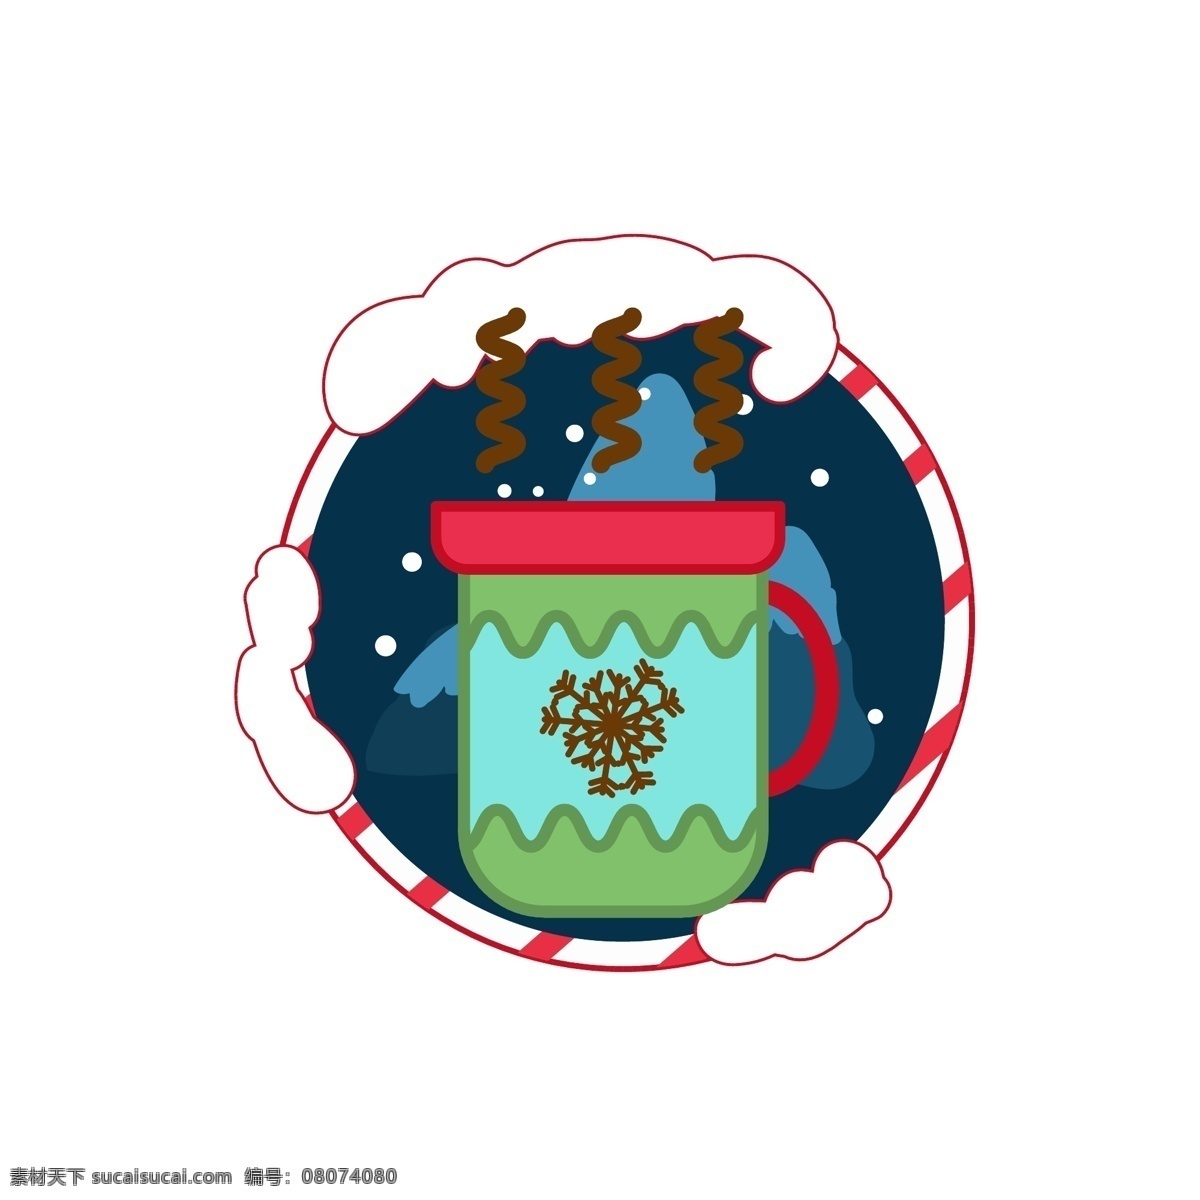 圣诞节 元素 装饰 图标 雪人 蝴蝶结 铃铛 雪花 装饰图案